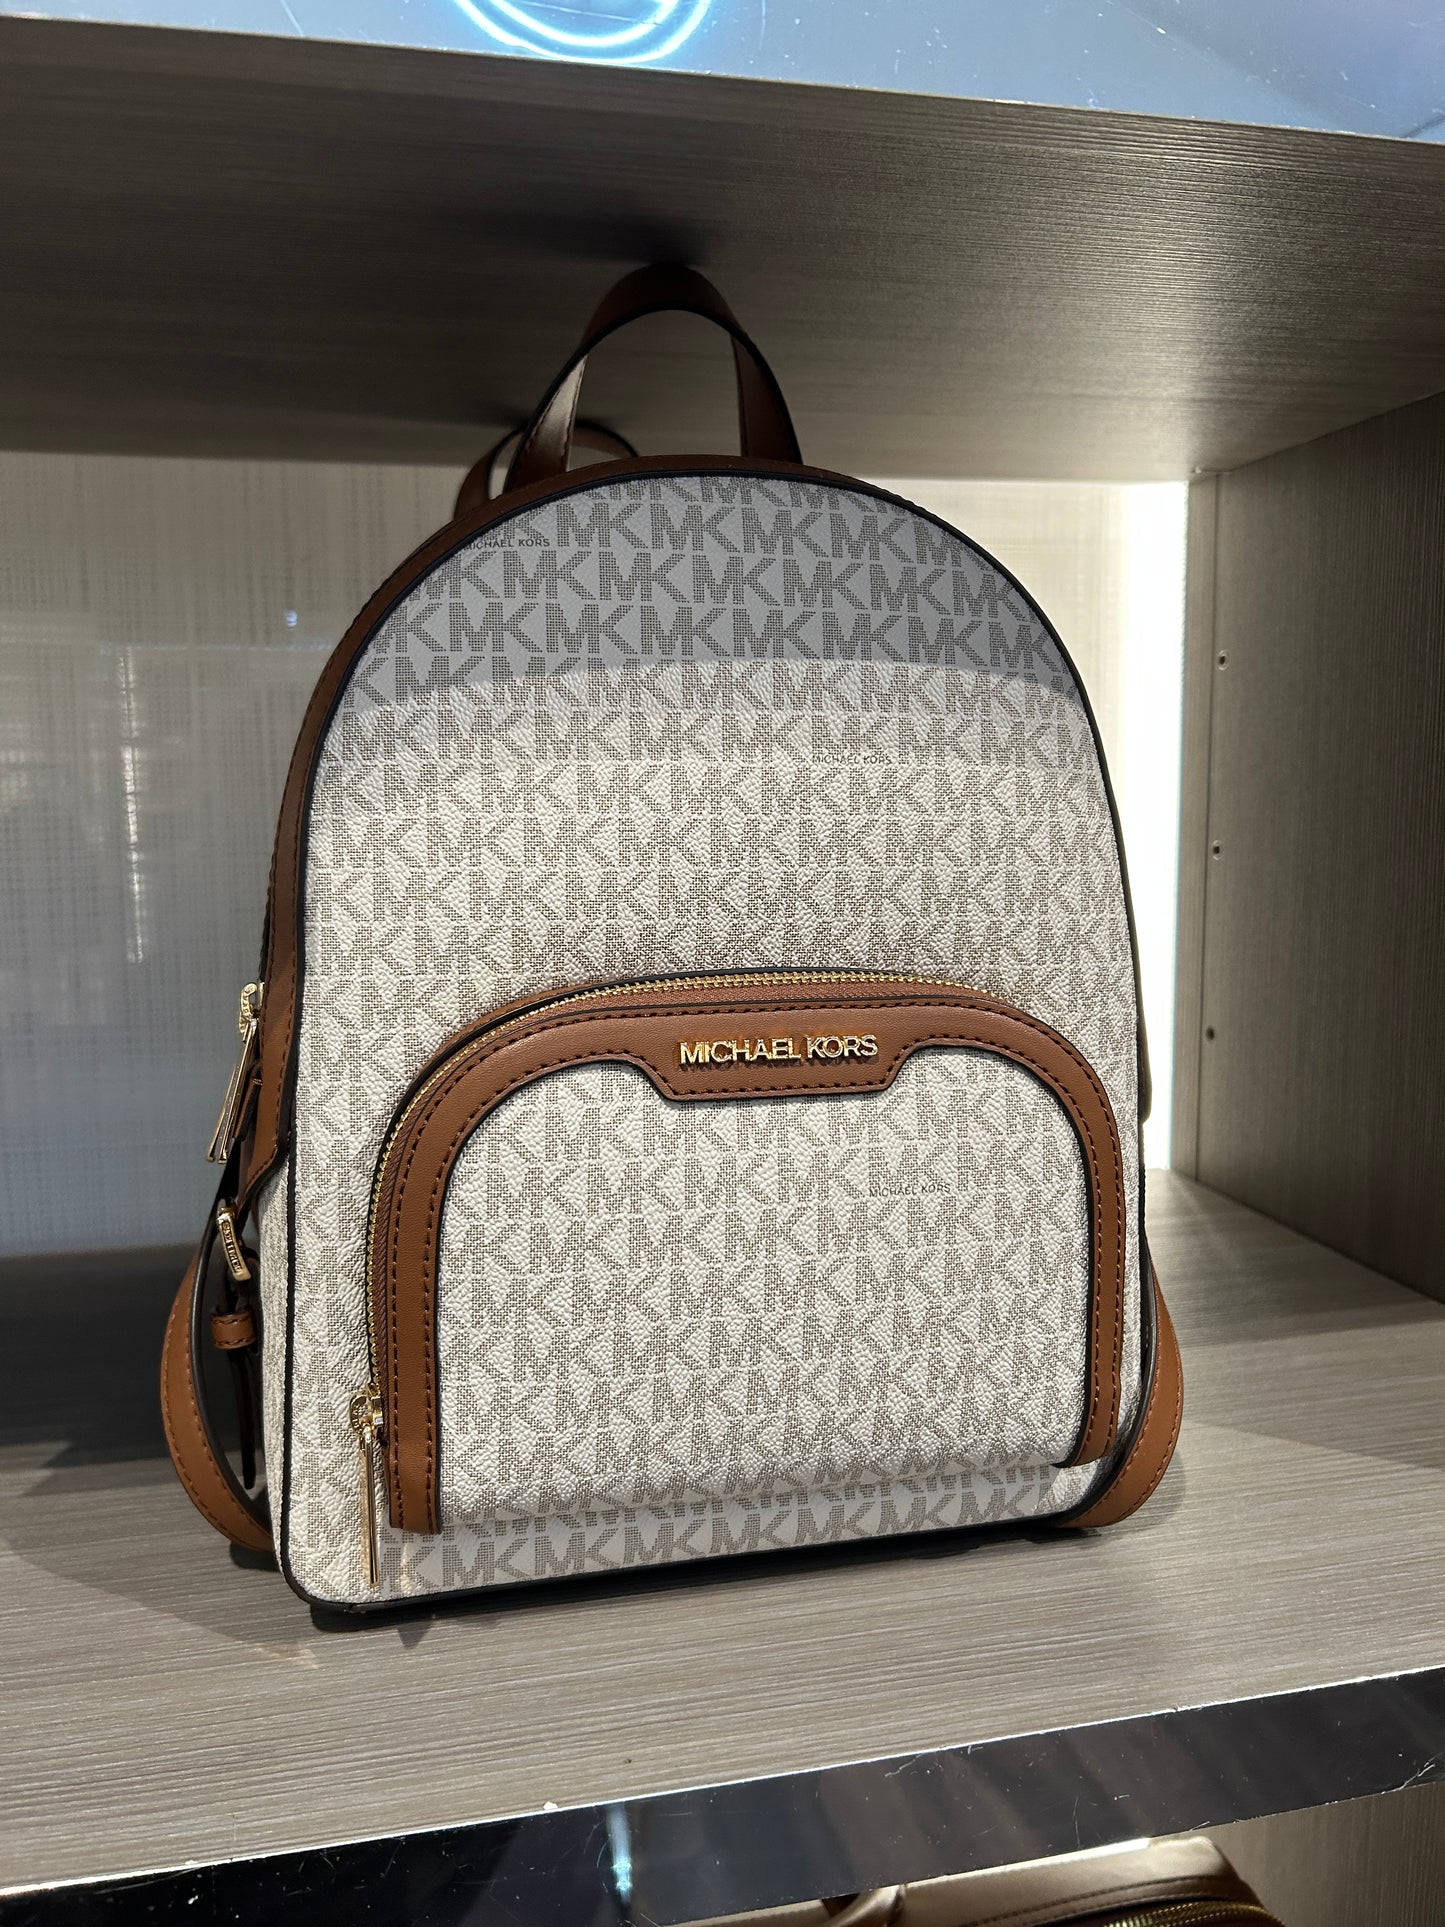 Load image into Gallery viewer, Michael Kors Jaycee Backpack Medium In Monogram Vanilla (Pre-Order)
